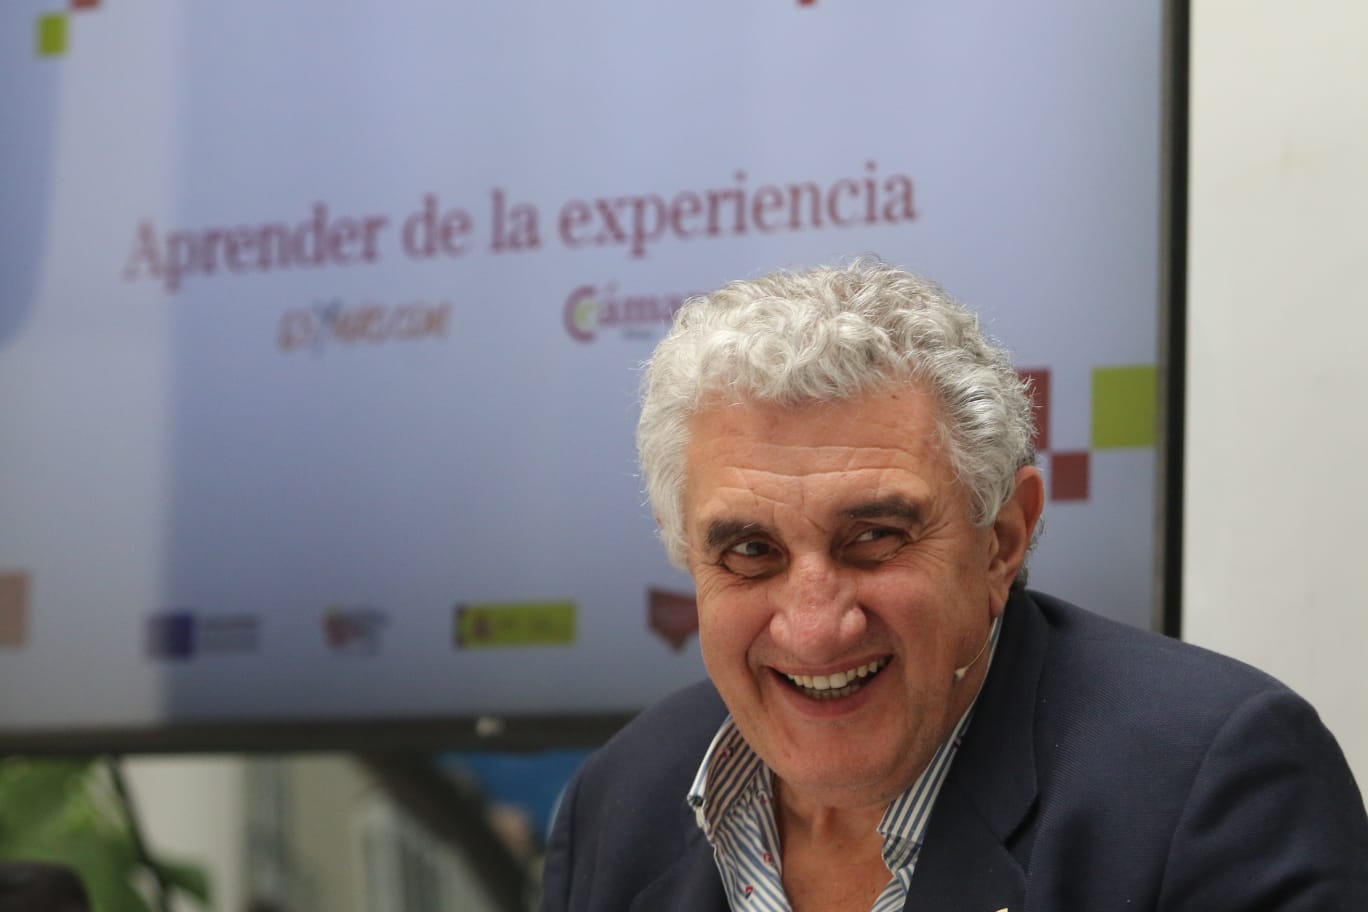 Cámara de Comercio de León se une a 65YMÁS en la campaña 'Aprender de la experiencia'